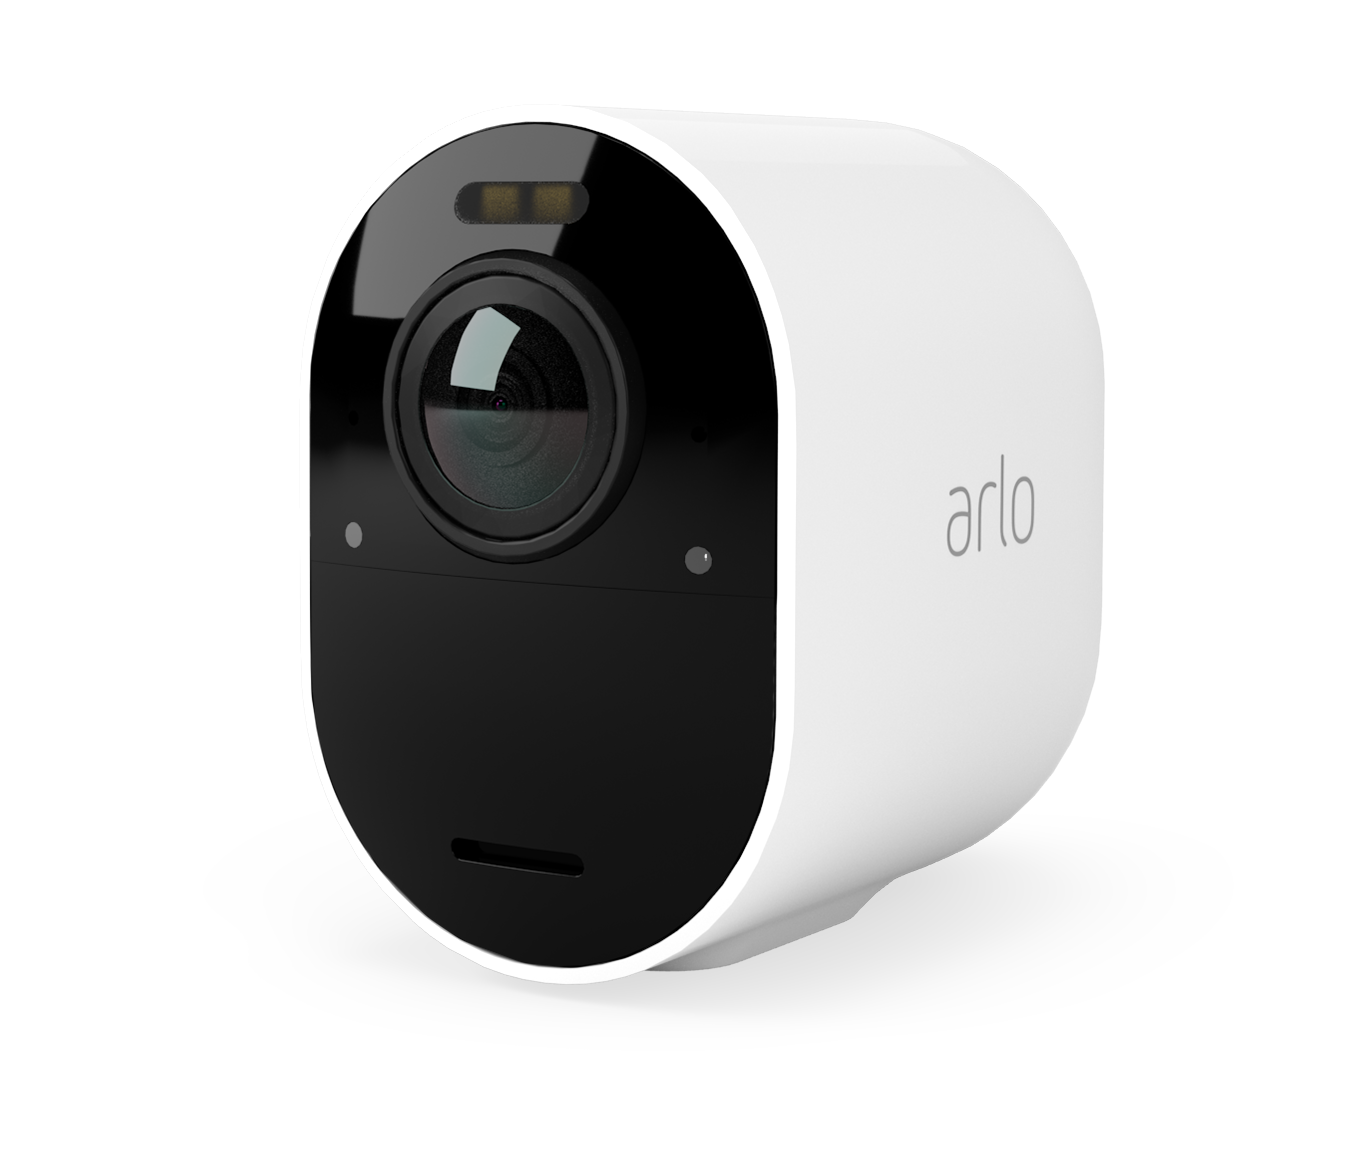 A white Arlo camera